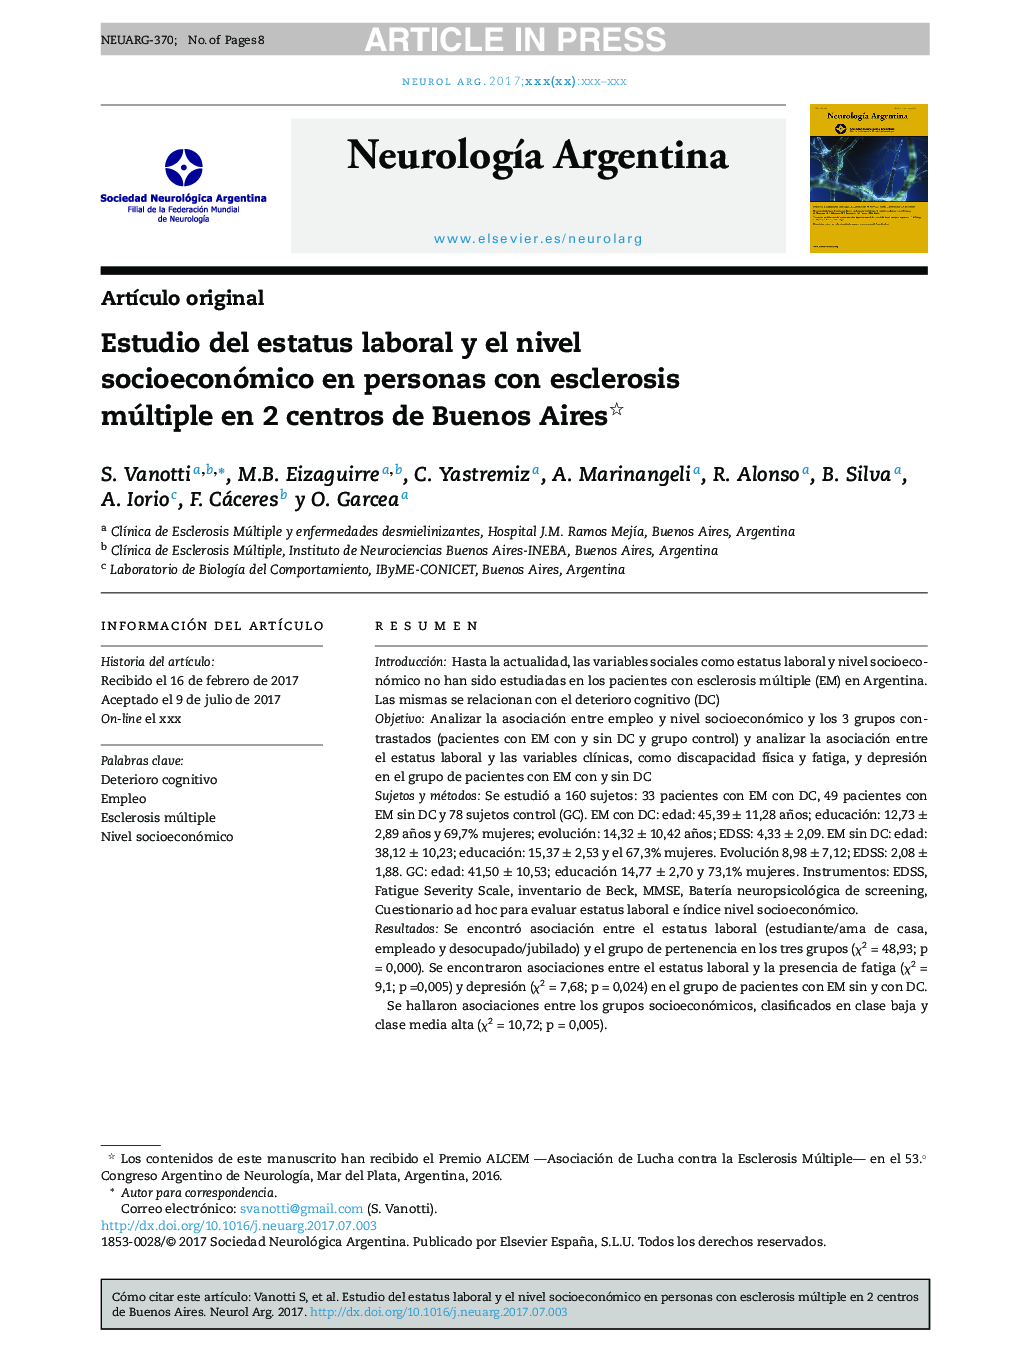 Estudio del estatus laboral y el nivel socioeconómico en personas con esclerosis múltiple en 2 centros de Buenos Aires